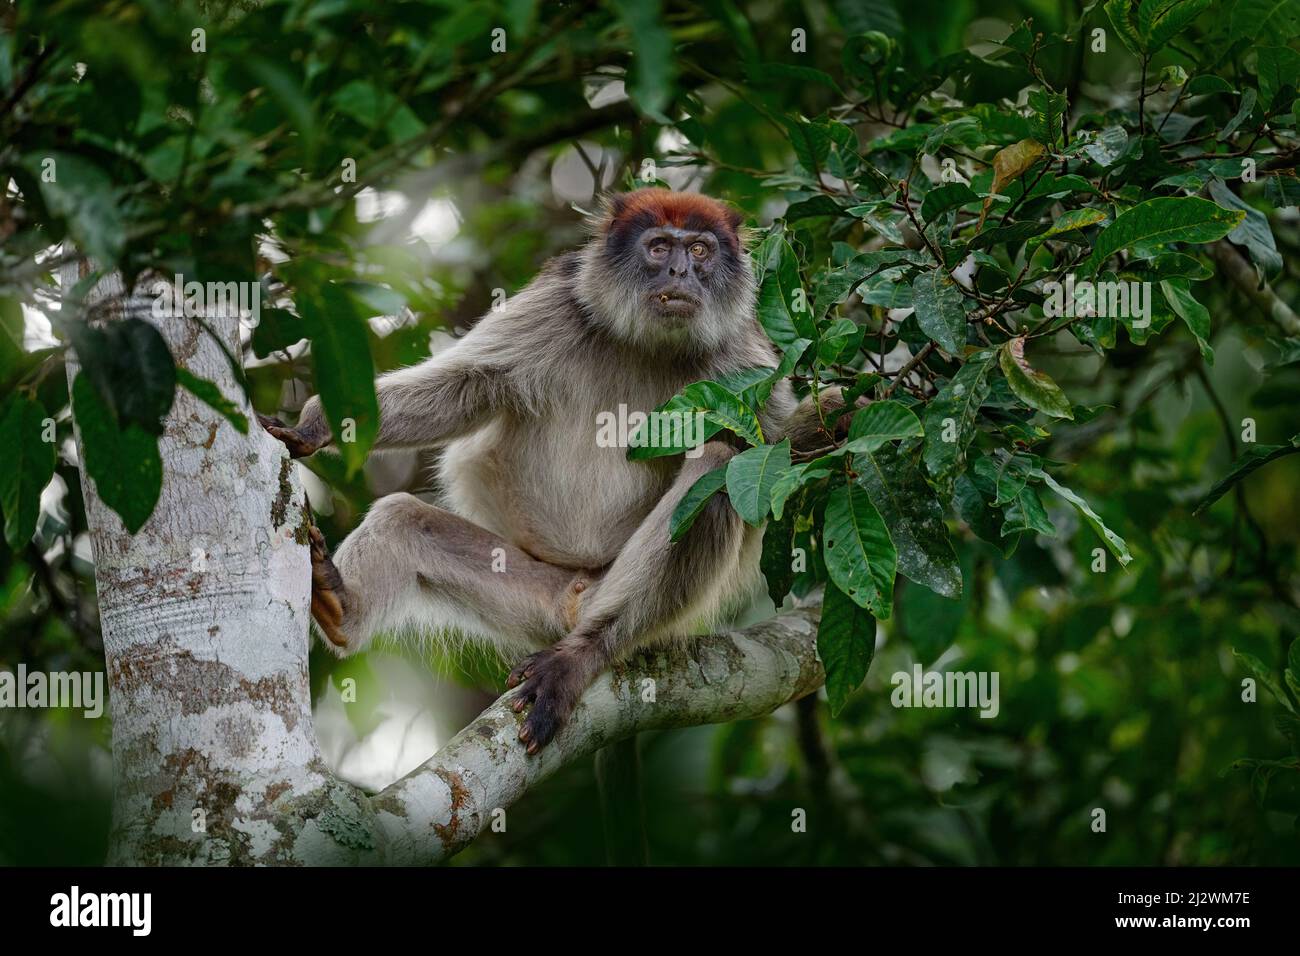 Colobús rojo ugandés, tefrosceles de Piliocolobus, mono gris cabeza rufa sentado en el tronco del árbol en el bosque tropical. Colobus rojo en hábitat de vegetación, KiB Foto de stock